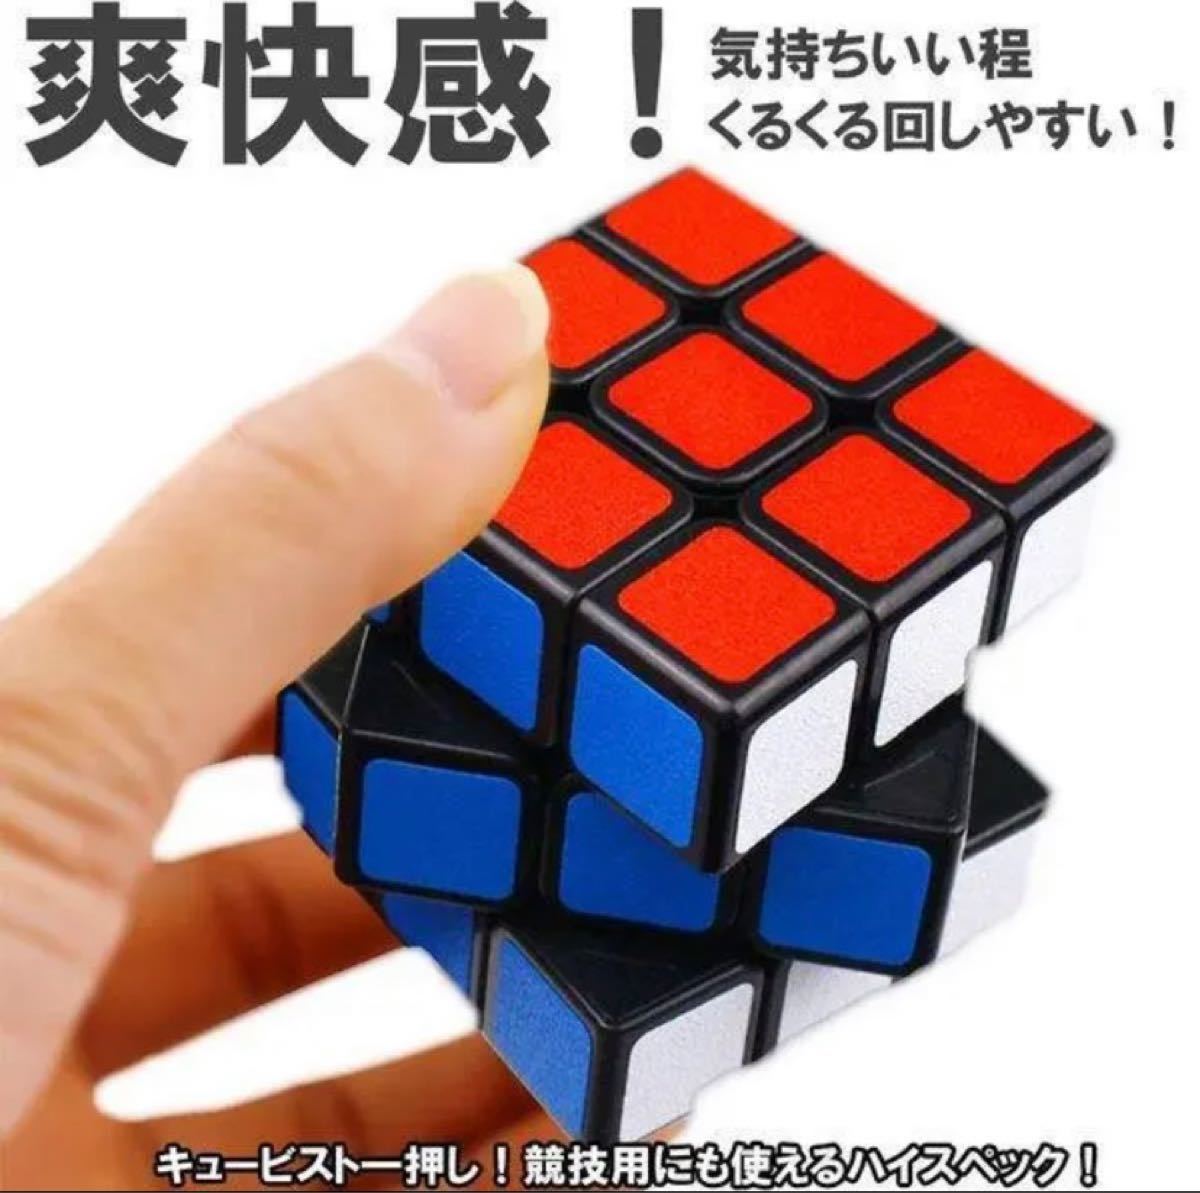 2個セット　お買い得　知育玩具 ルービックキューブ 立体パズル 3×3×3 おもちゃ　スピードキューブ 脳トレ 競技用 立体パズル